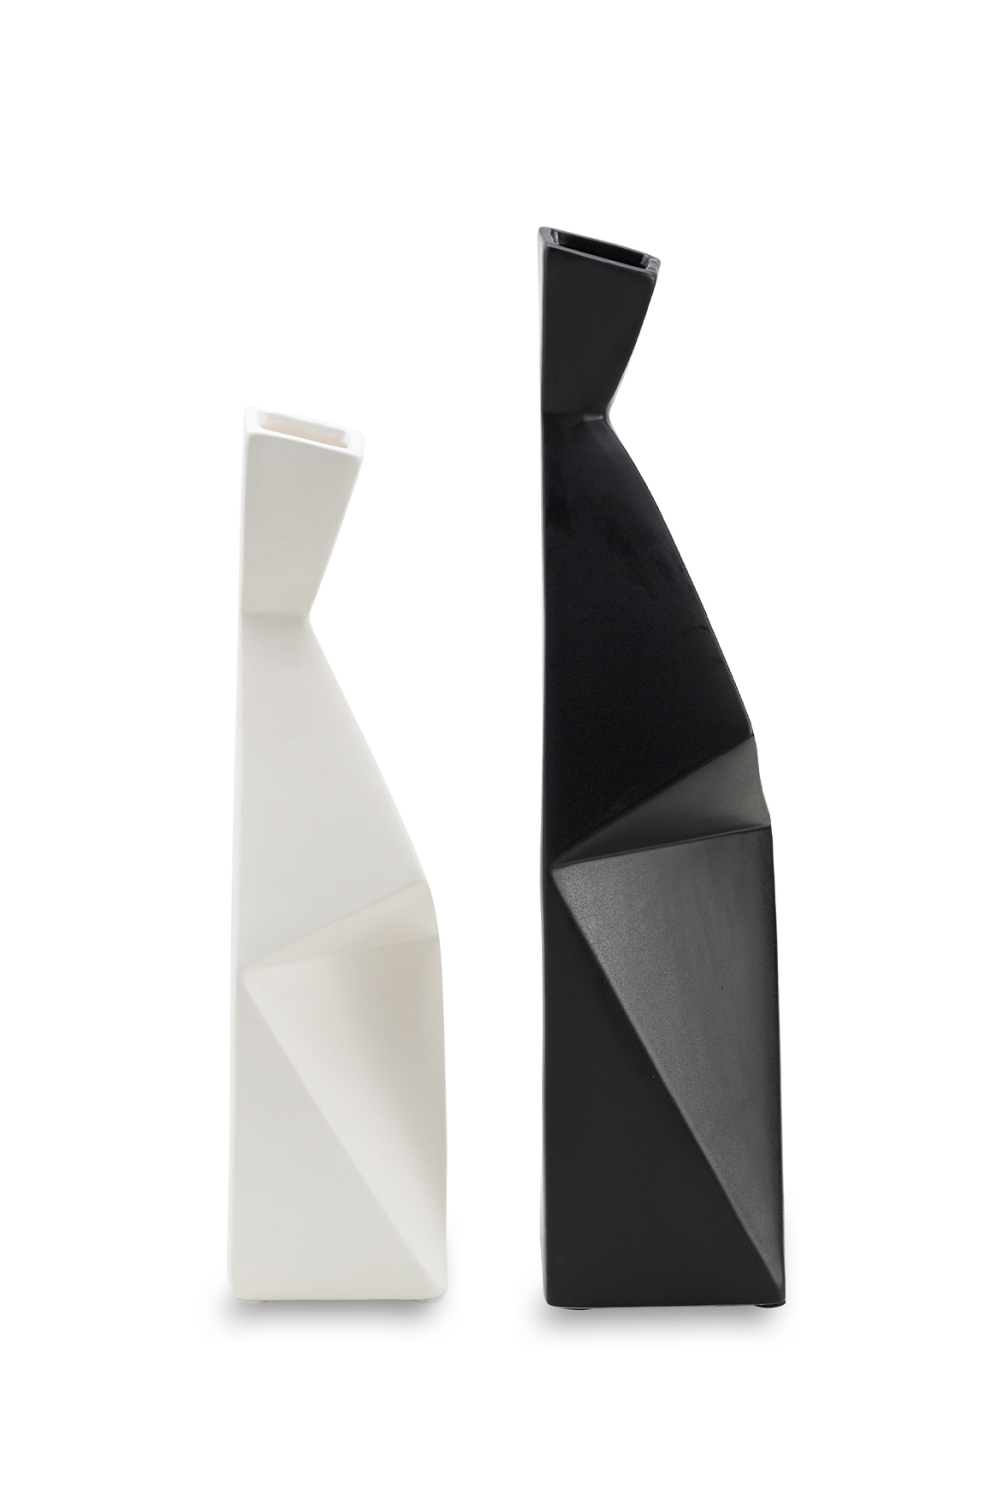 Modern Ceramic Vase | Liang & Eimil Allen | OROA.com